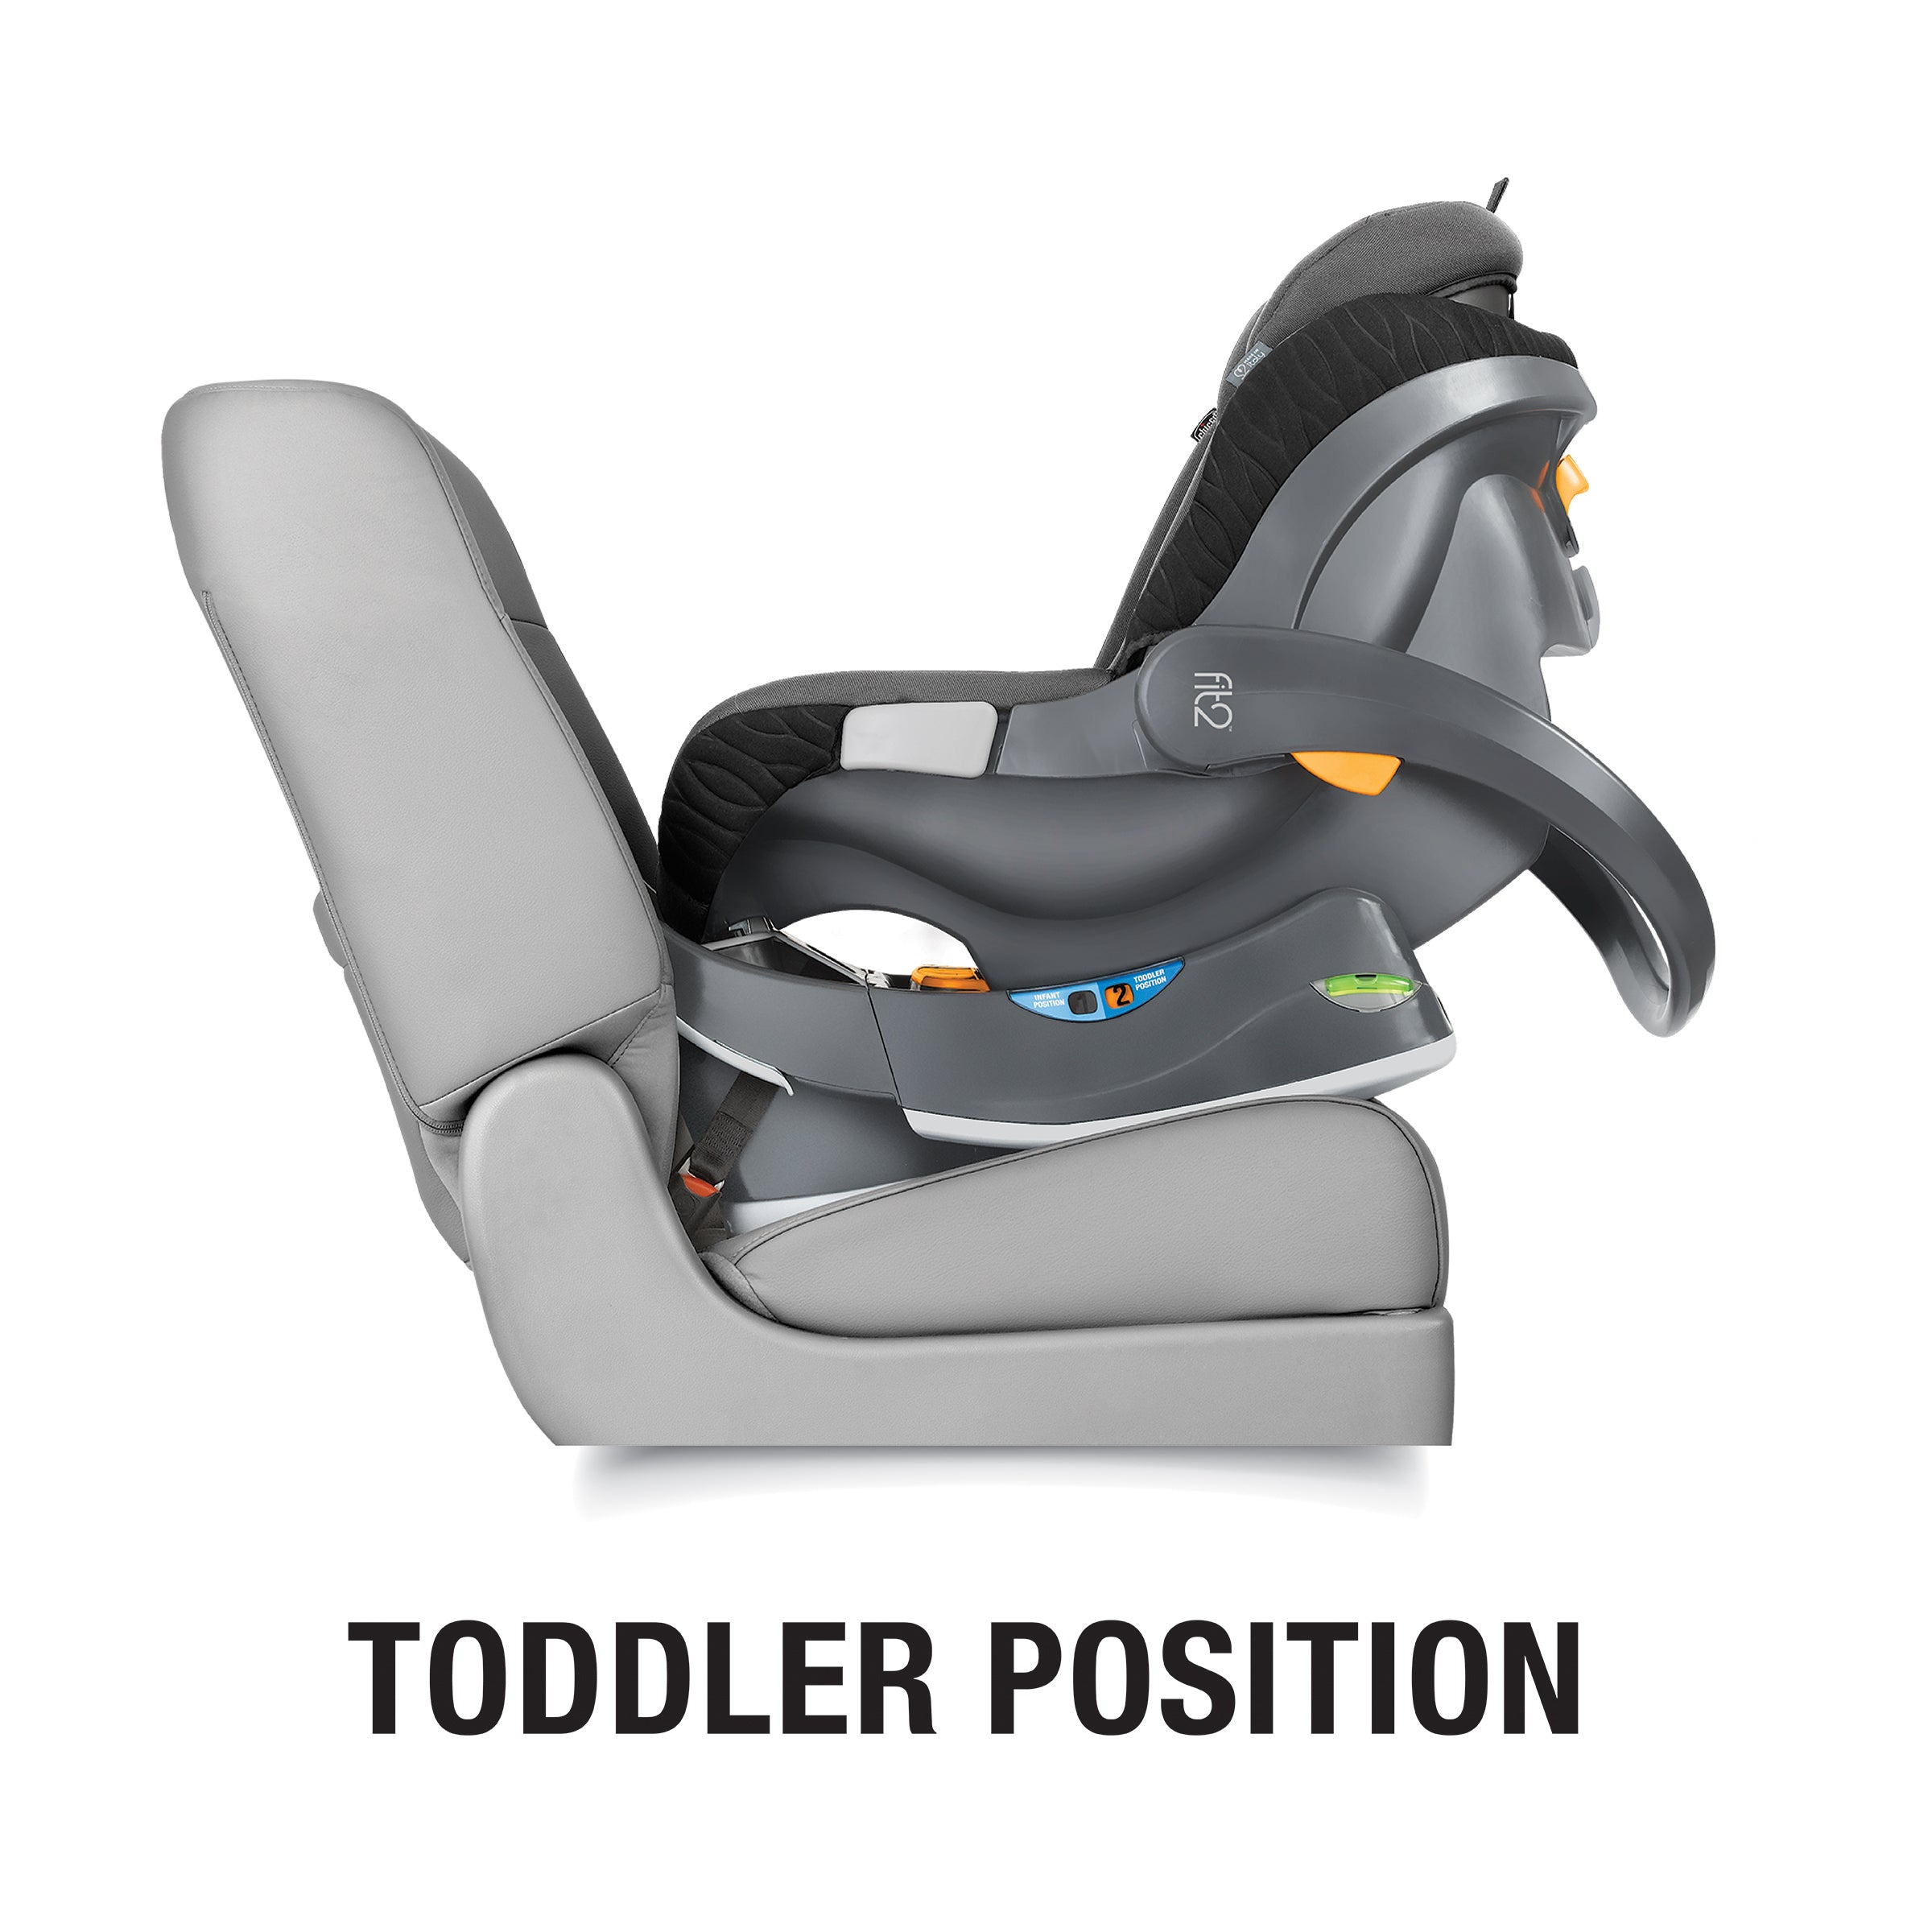 Fit2 Air Infant & Toddler Car Seat - Vero